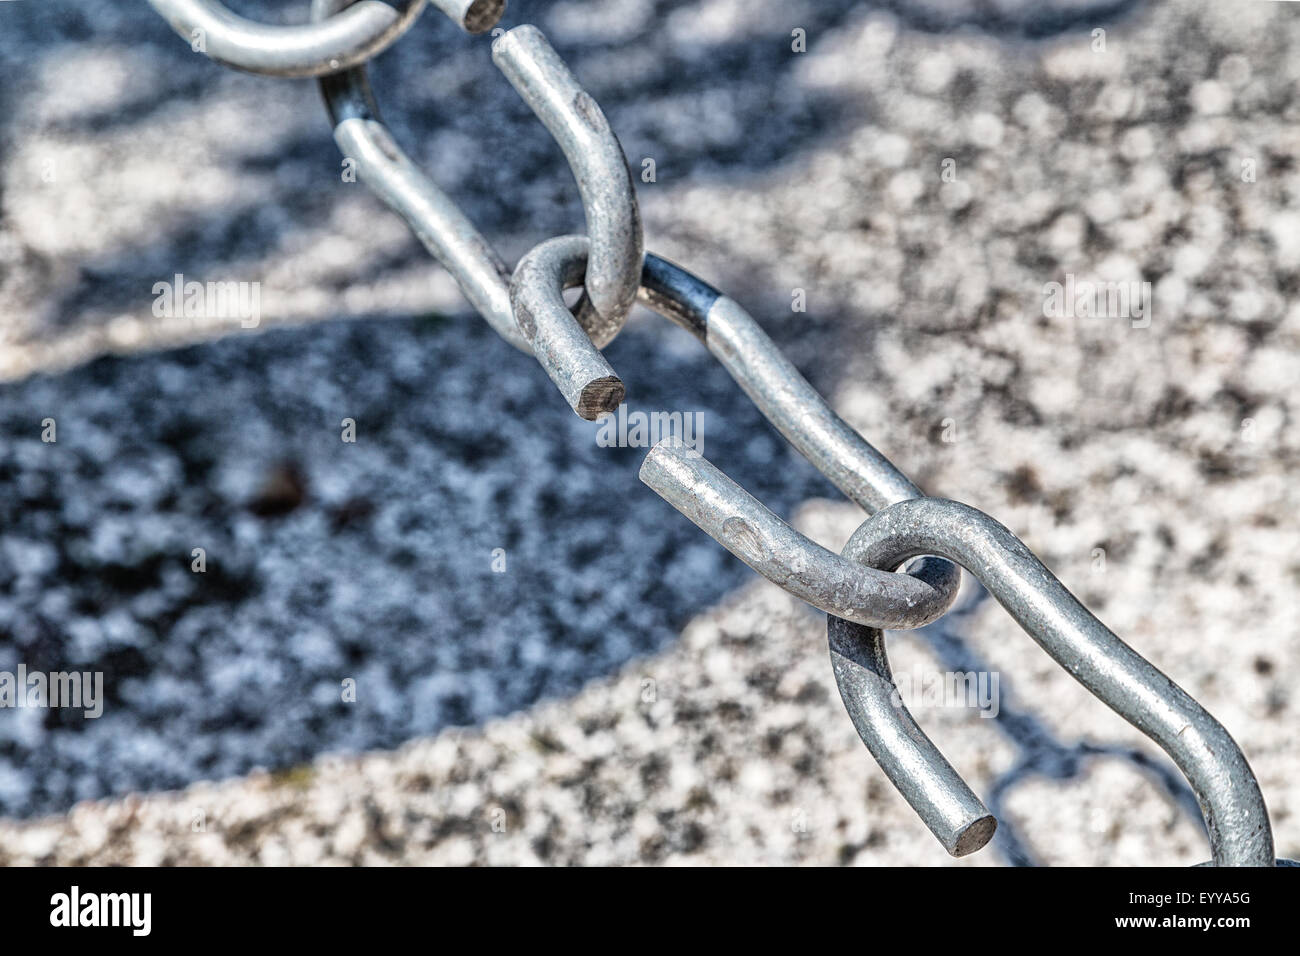 Il collegamento nella catena è apertura: questa debole collegamento definisce il vero punto di forza di questa catena di acciaio Foto Stock